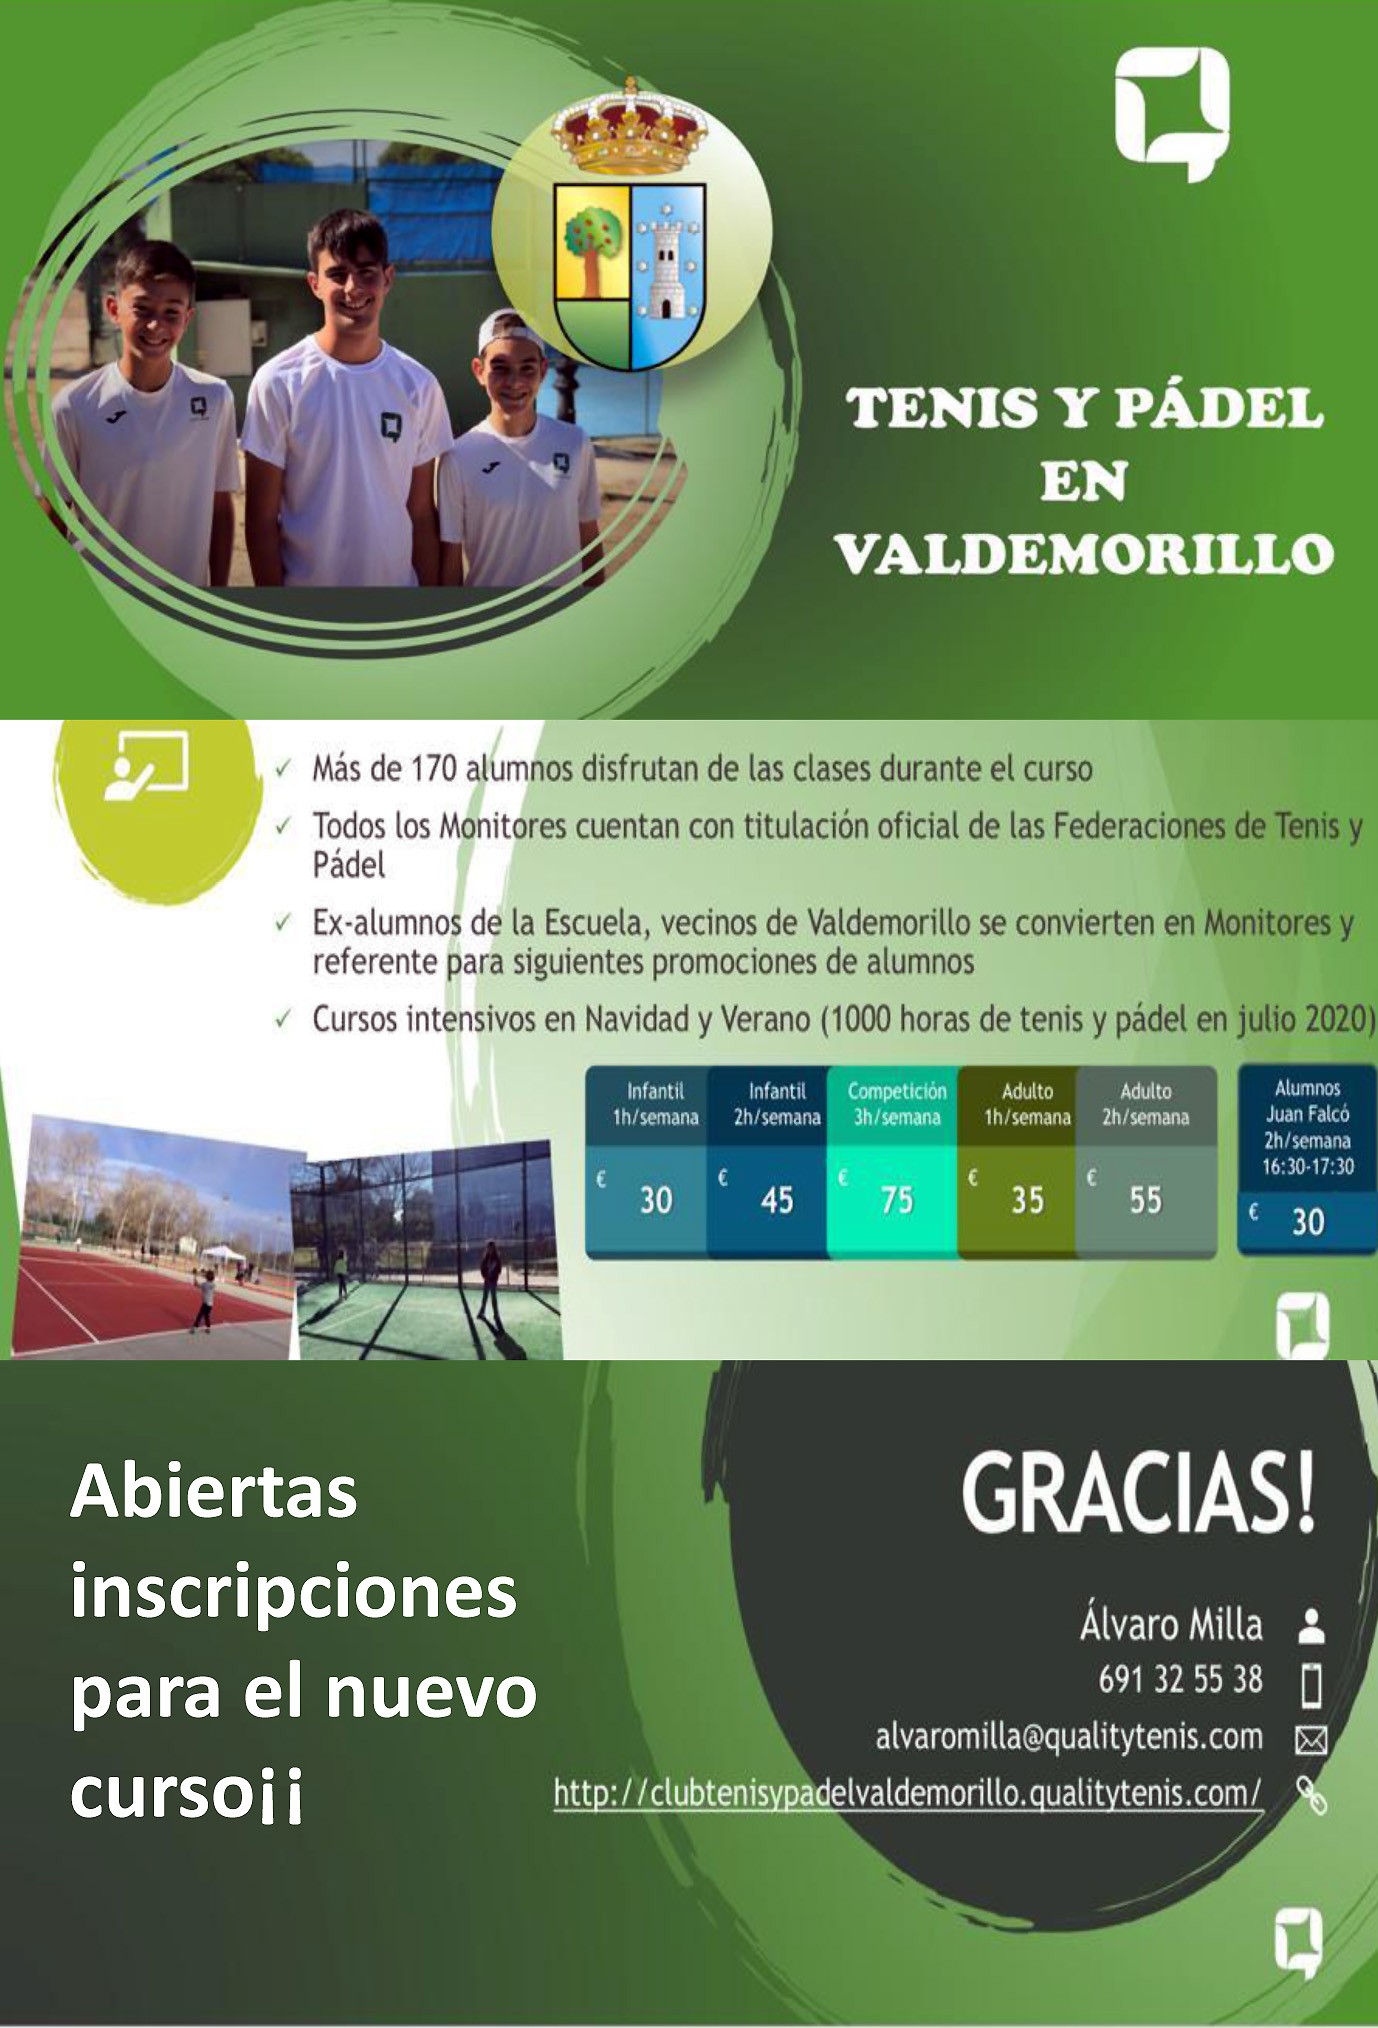 Todo a punto en las canchas y pistas de Valdemorillo  para el nuevo curso, con más de 170 alumnos disfrutando al máximo de los deportes de raqueta en las clases impartidas por profesionales con gran experiencia